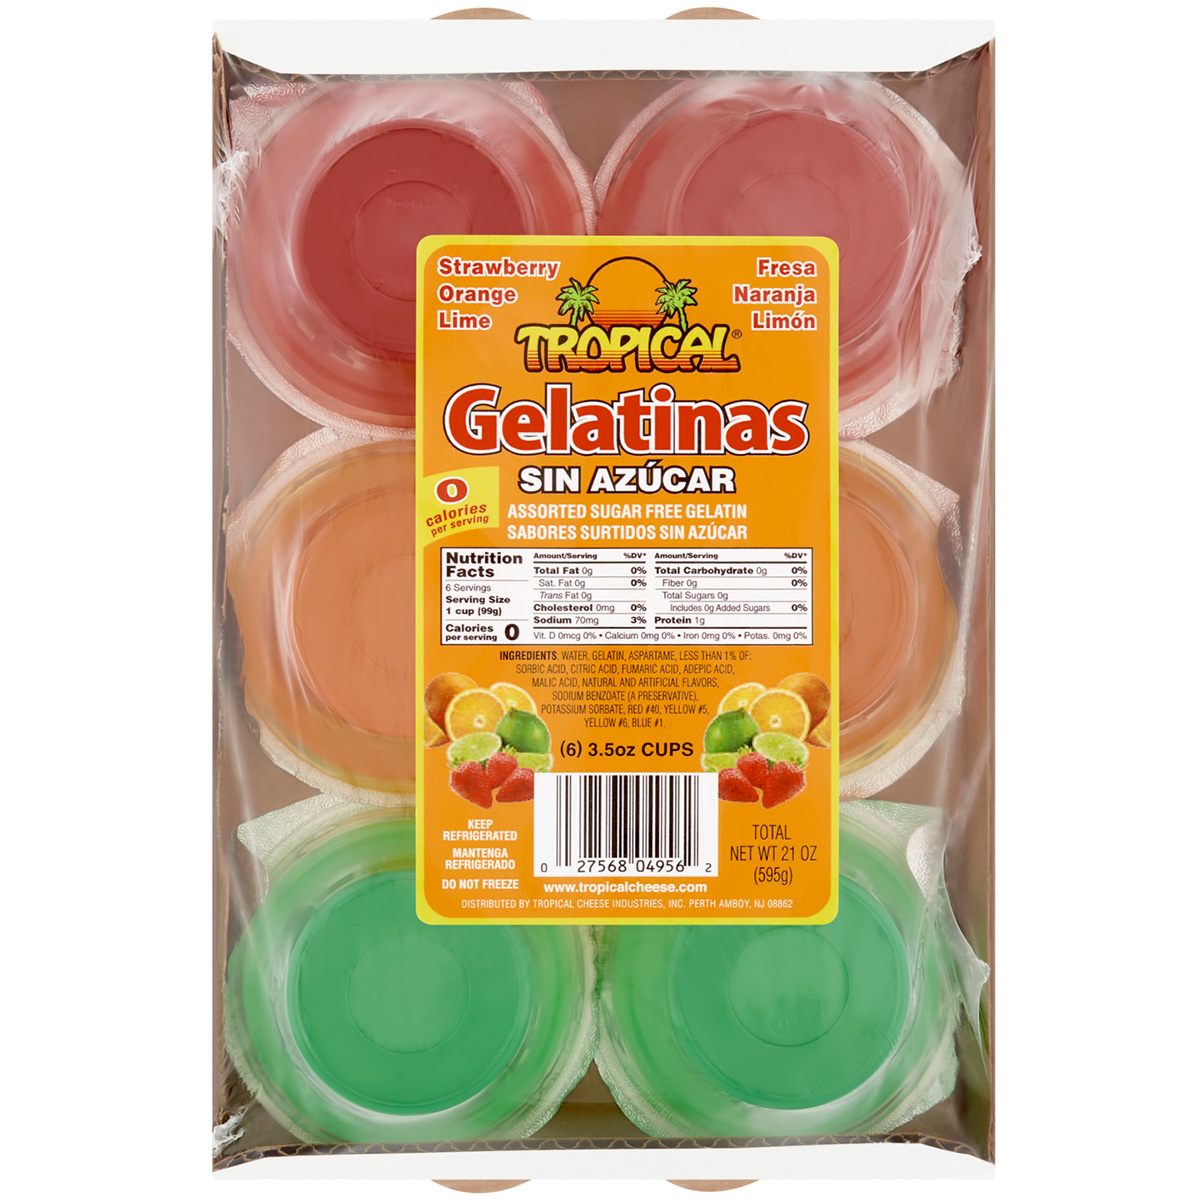 Gelatina Sin Sabor Sin azúcar x 15 g